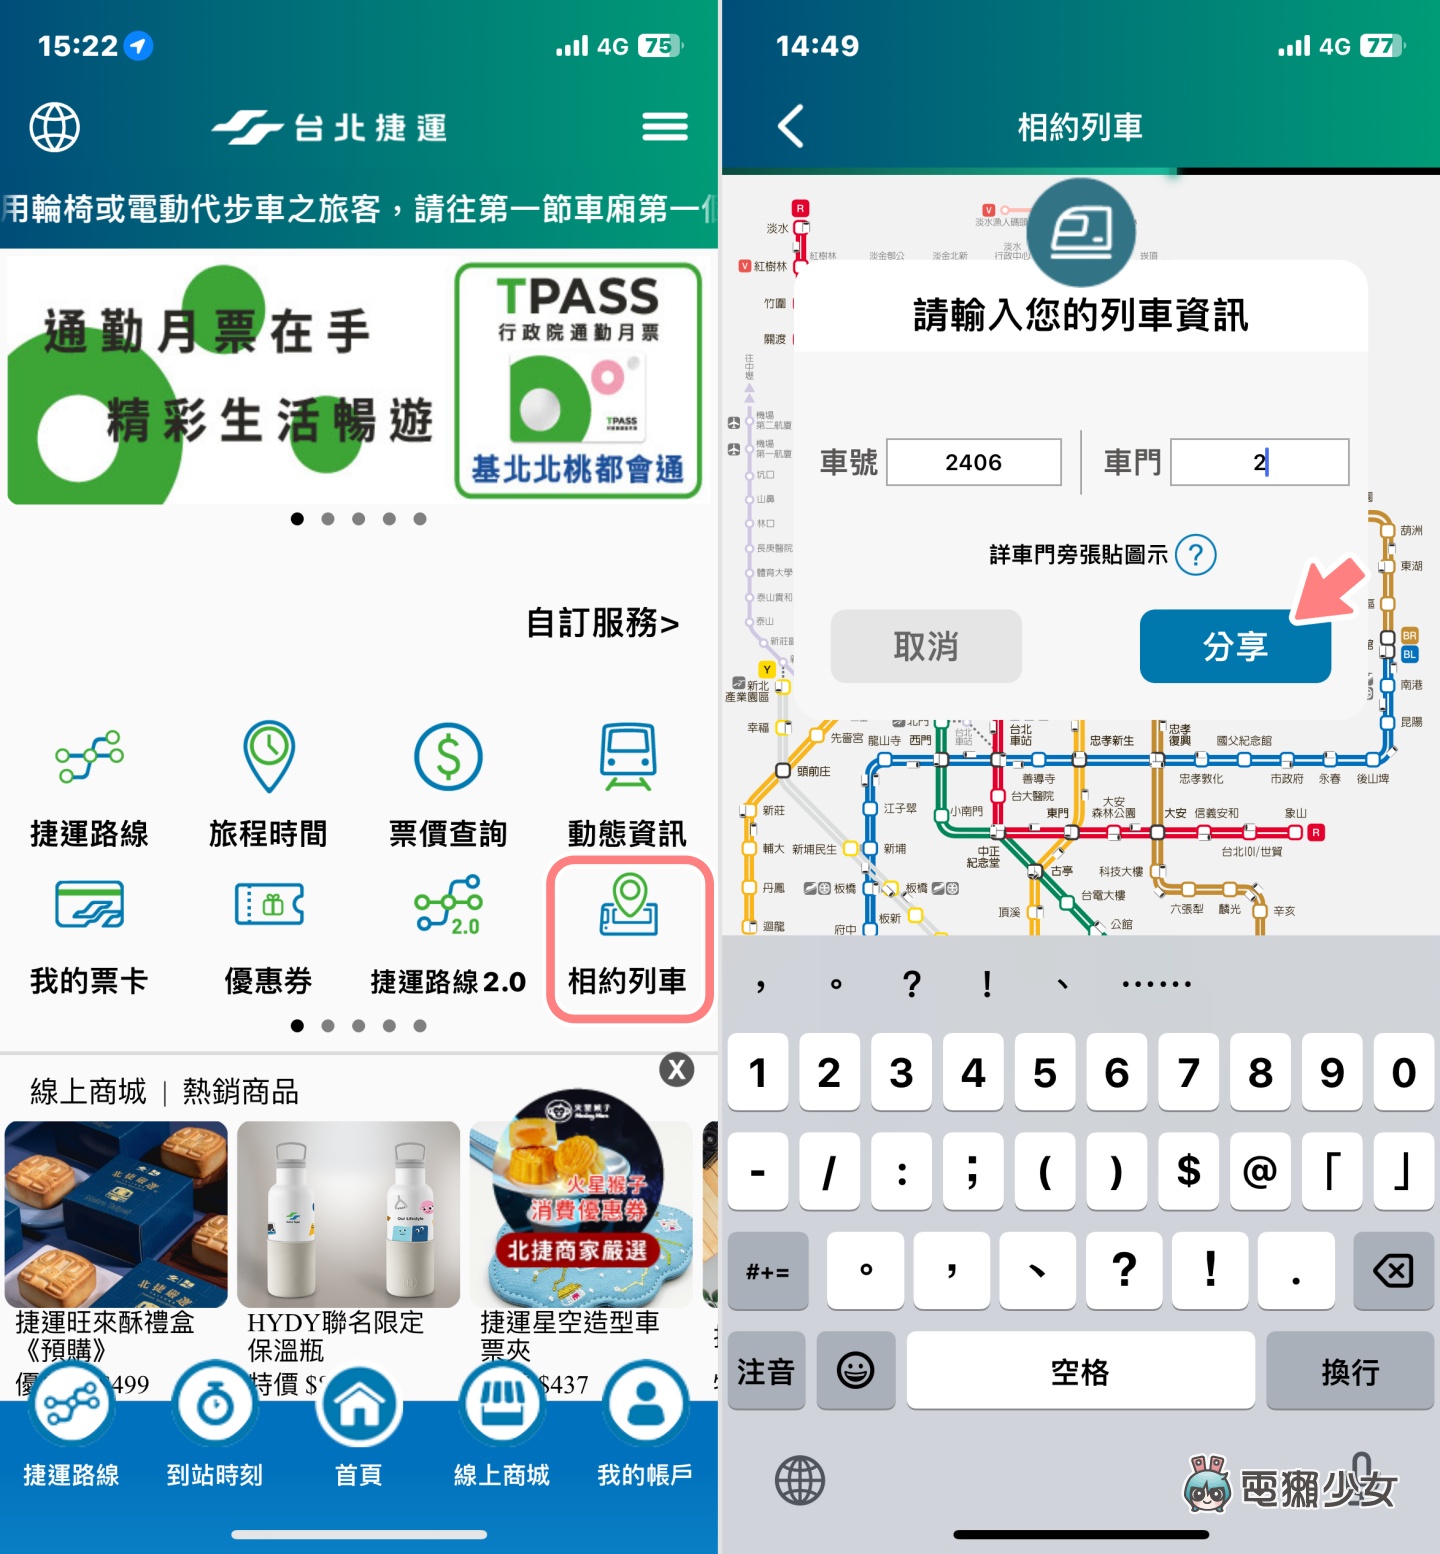 北捷 App 推『 相約列車 』新功能！在同班捷運、不同車廂，也能快速找到人